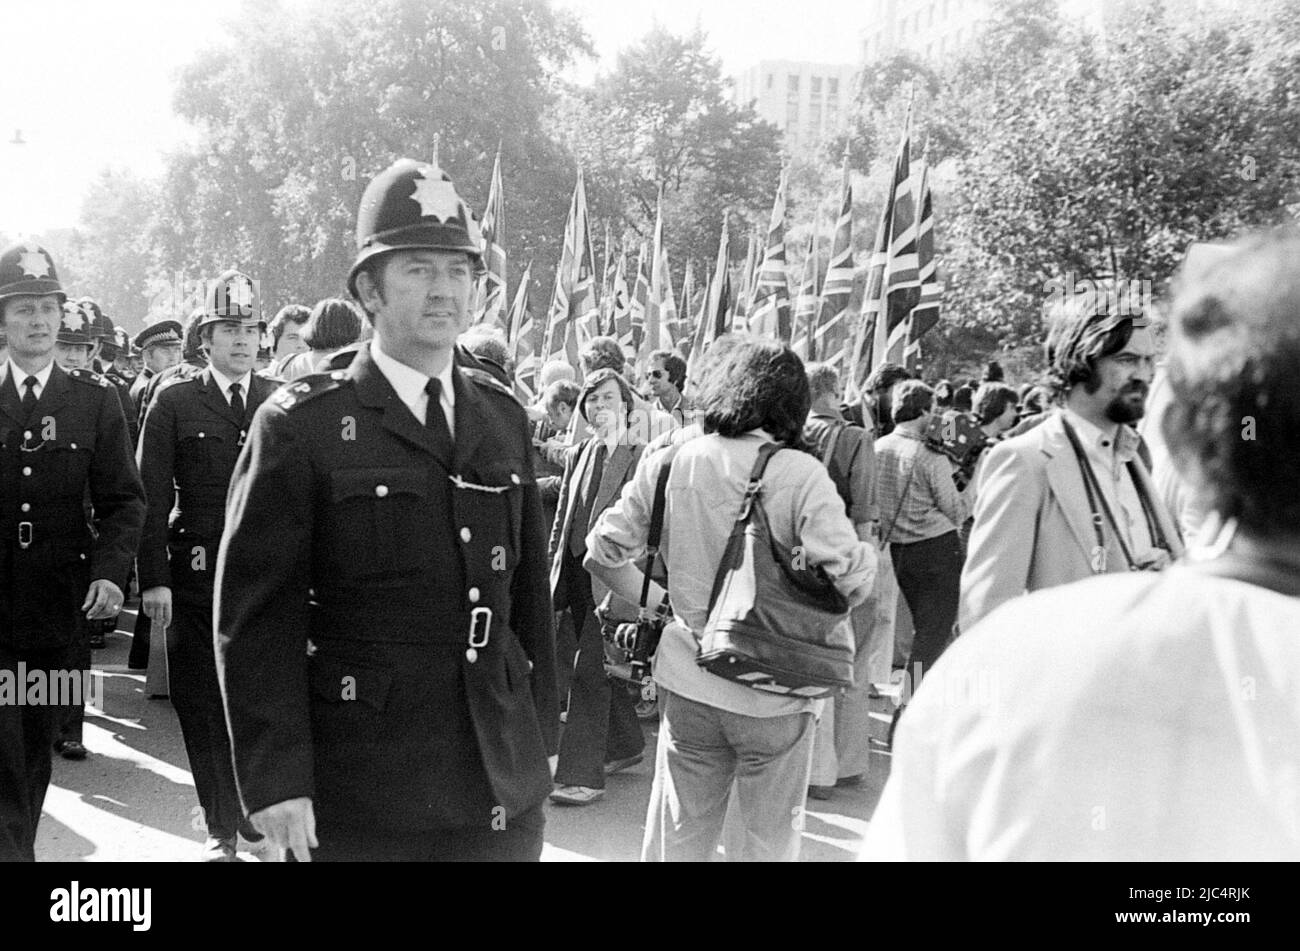 Une marche du Front National à l'extrême droite, Londres, Angleterre, Royaume-Uni, entourée de policiers, septembre 1978. Le même jour, une marche anti-nazie de la Ligue a eu lieu à Londres, de sorte que la police était là en grand nombre pour maintenir les deux marches à part et pour traiter tout conflit entre elles. Banque D'Images